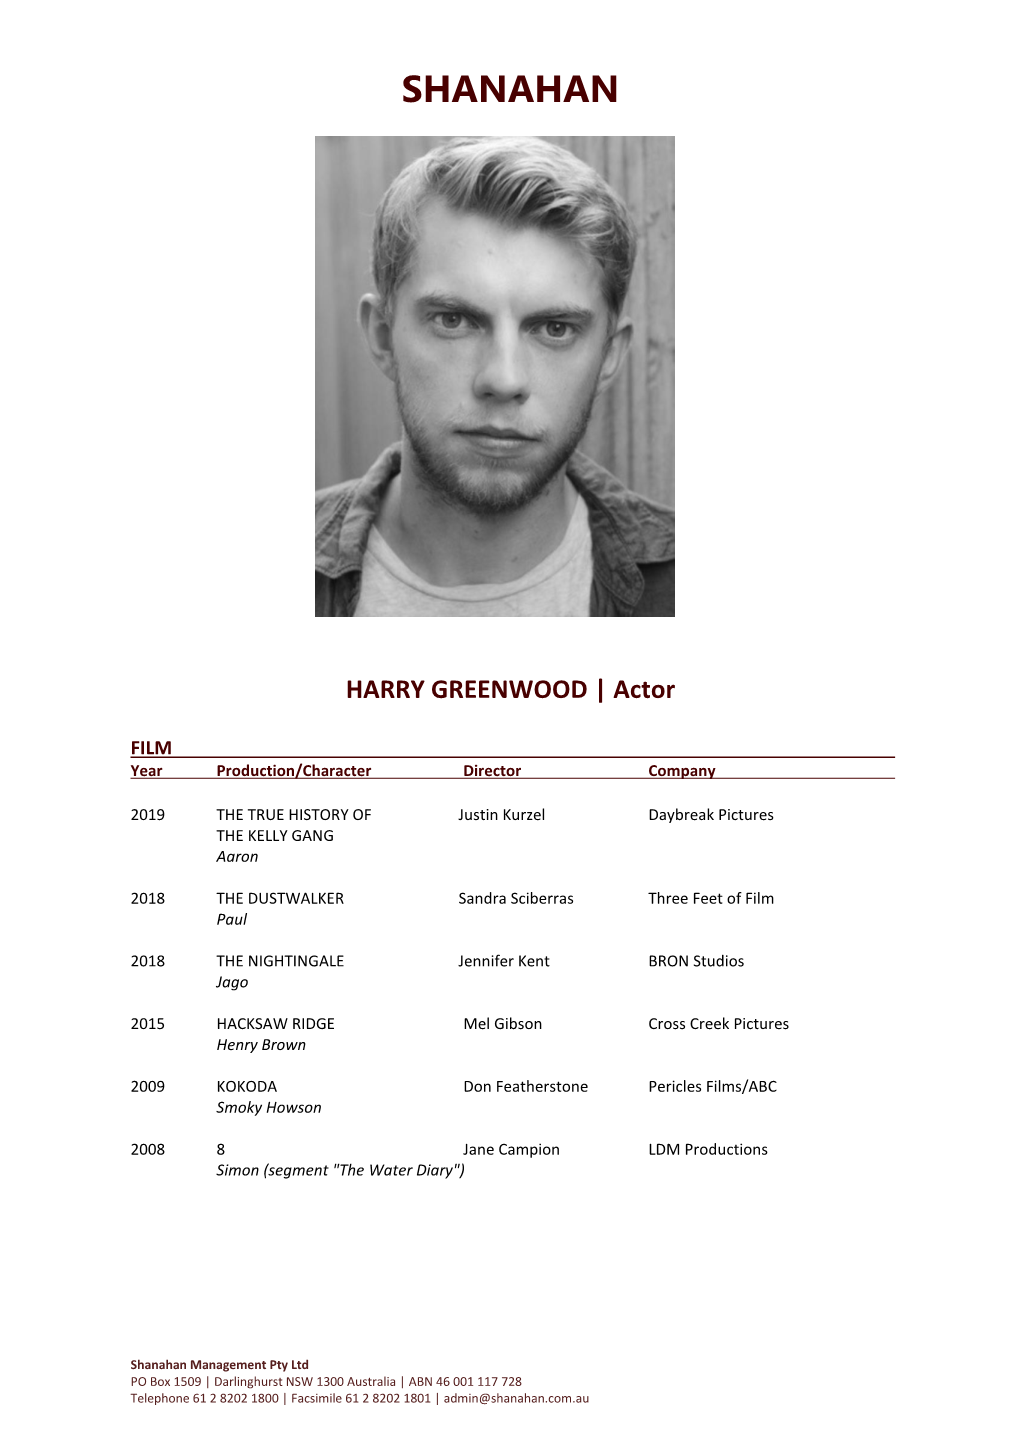 HARRY GREENWOOD | Actor